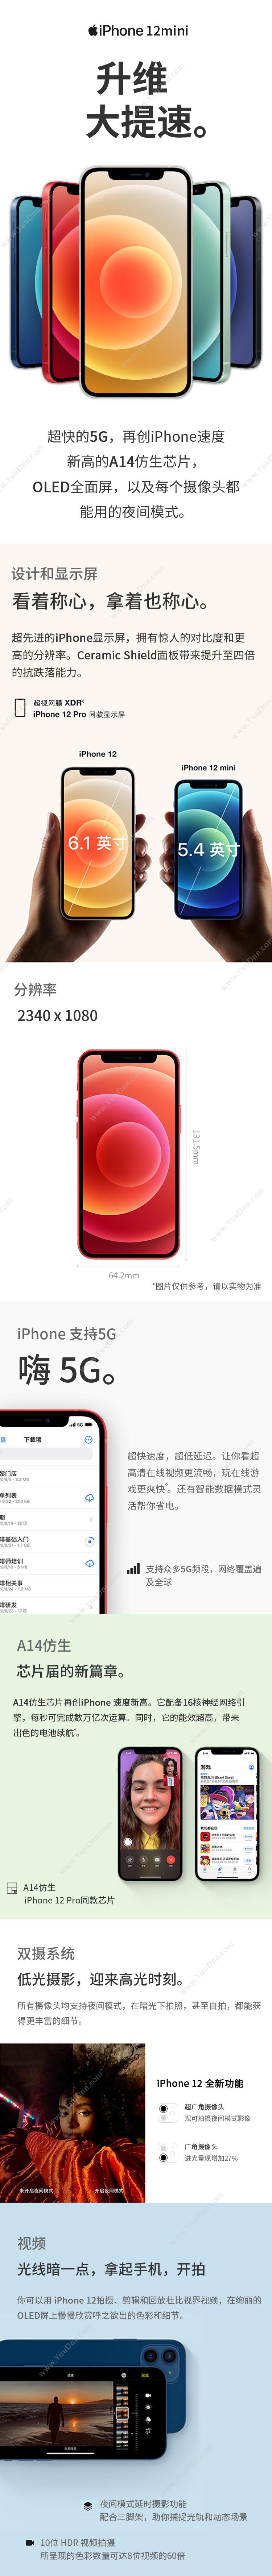 苹果 Apple iPhone 12Mini (MG8C3CH/A) 256G 红色 移动联通电信5G手机 手机